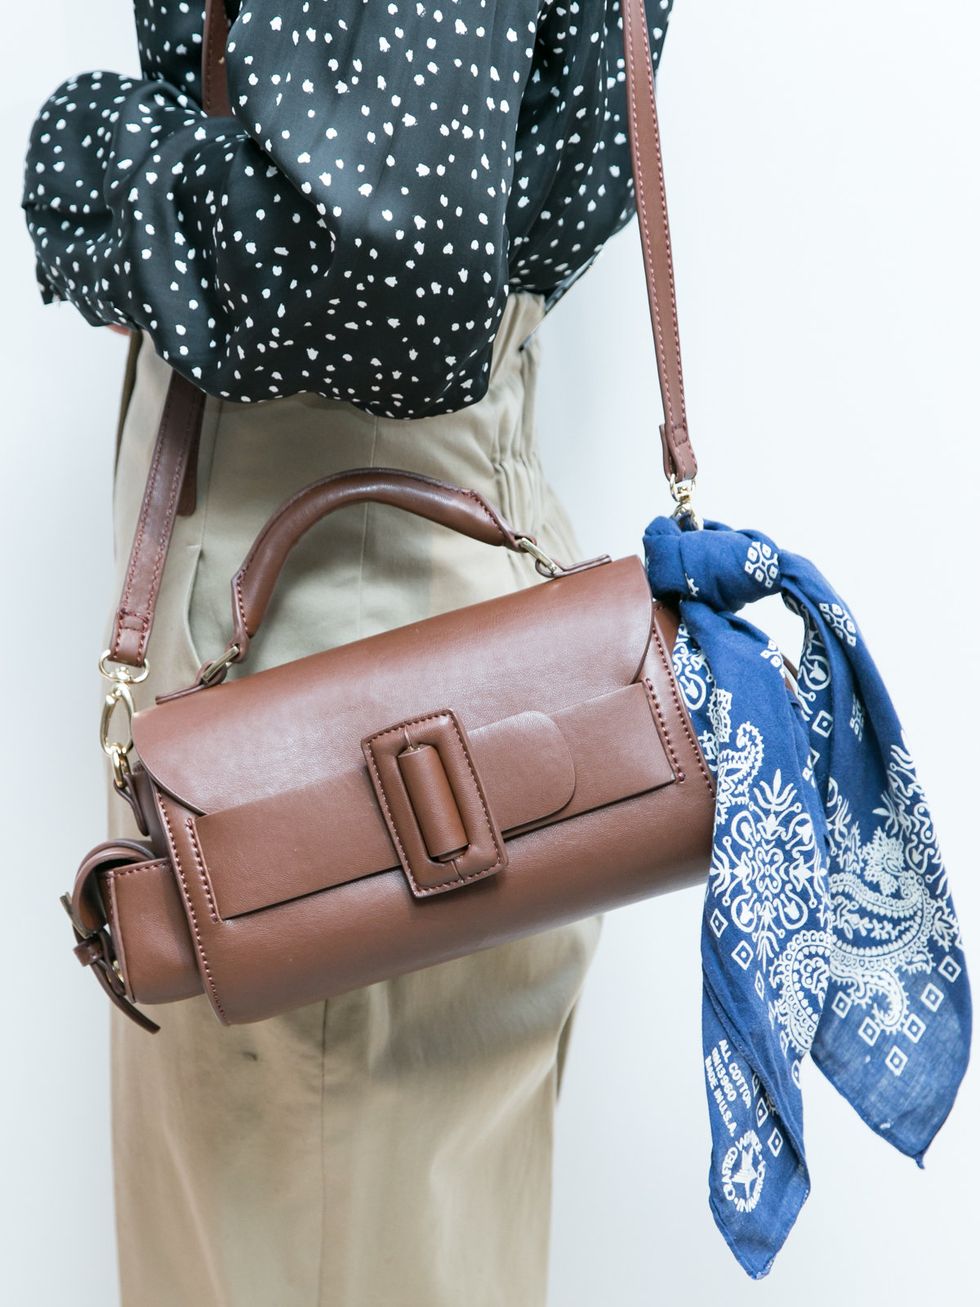 Bag, Handbag, Fashion accessory, Shoulder bag, Beige, Material property, Satchel, Electric blue, Leather, Diaper bag, 